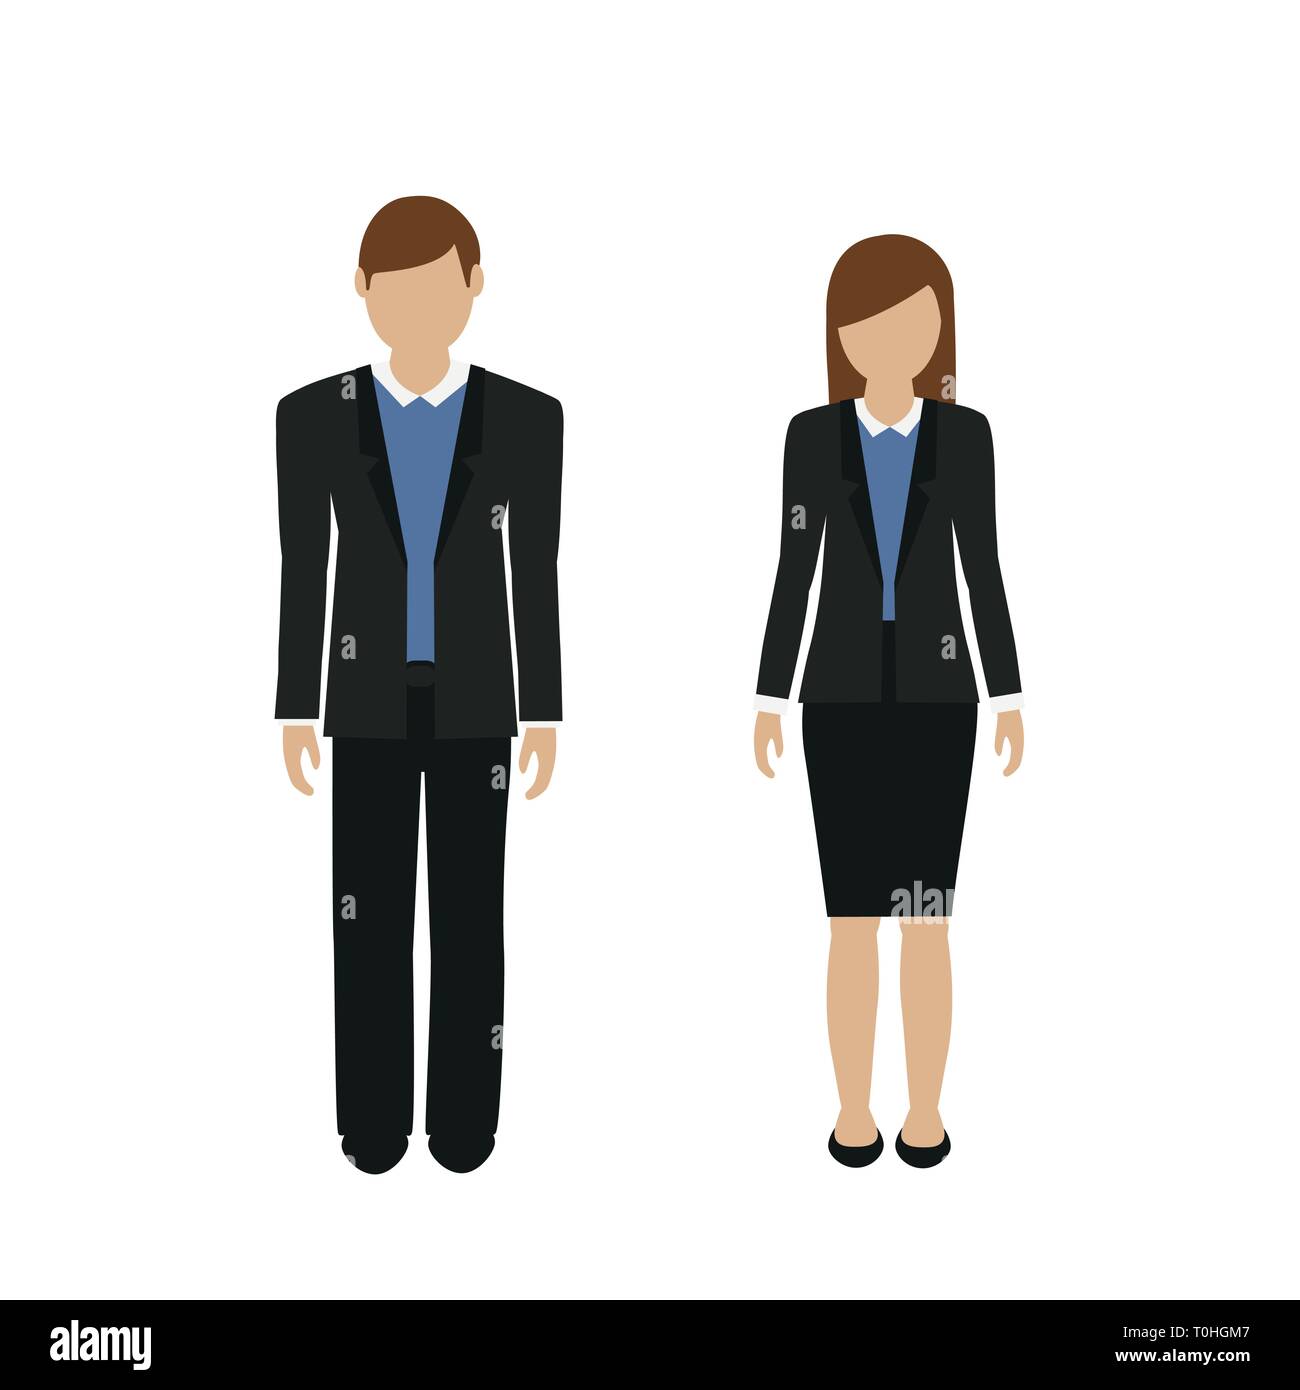 Mann und Frau Charakter in Business Look auf weißem Hintergrund Vektor-illustration EPS 10 isoliert Stock Vektor